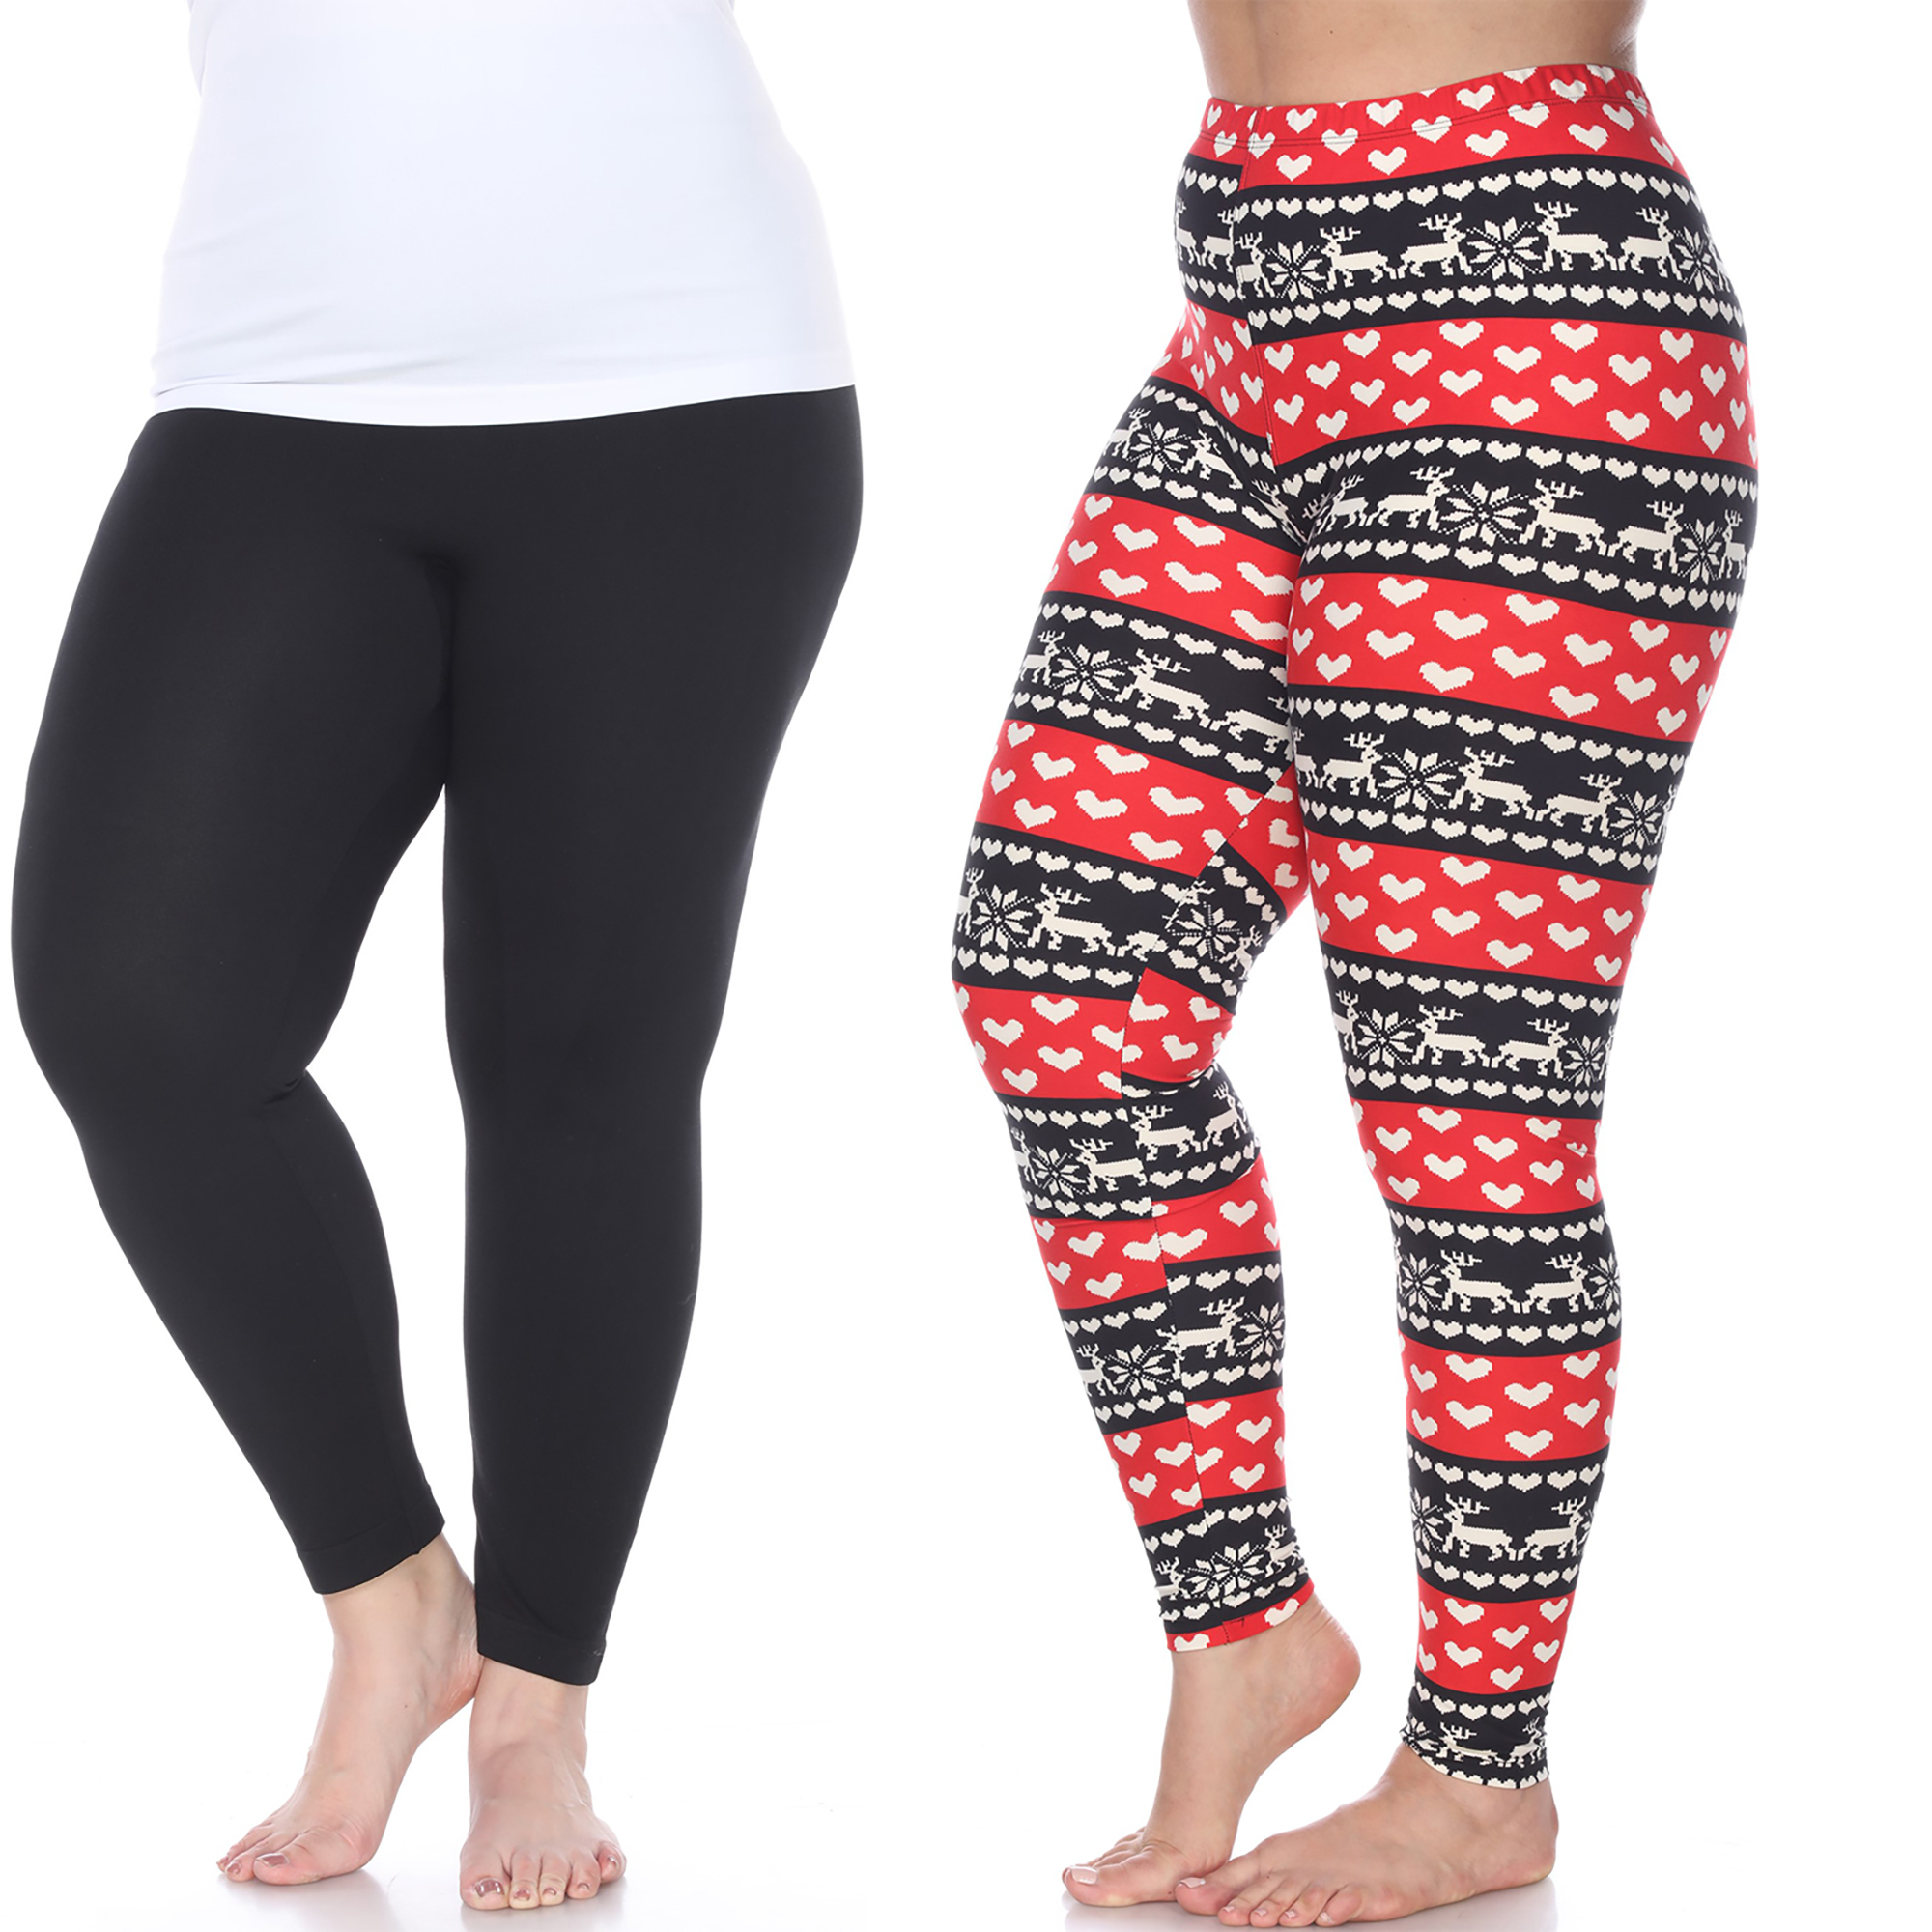 White Mark Women's Pack Of 2 Holiday Leggings - Blk/Wht/Red, Black/White, One Size - Regular